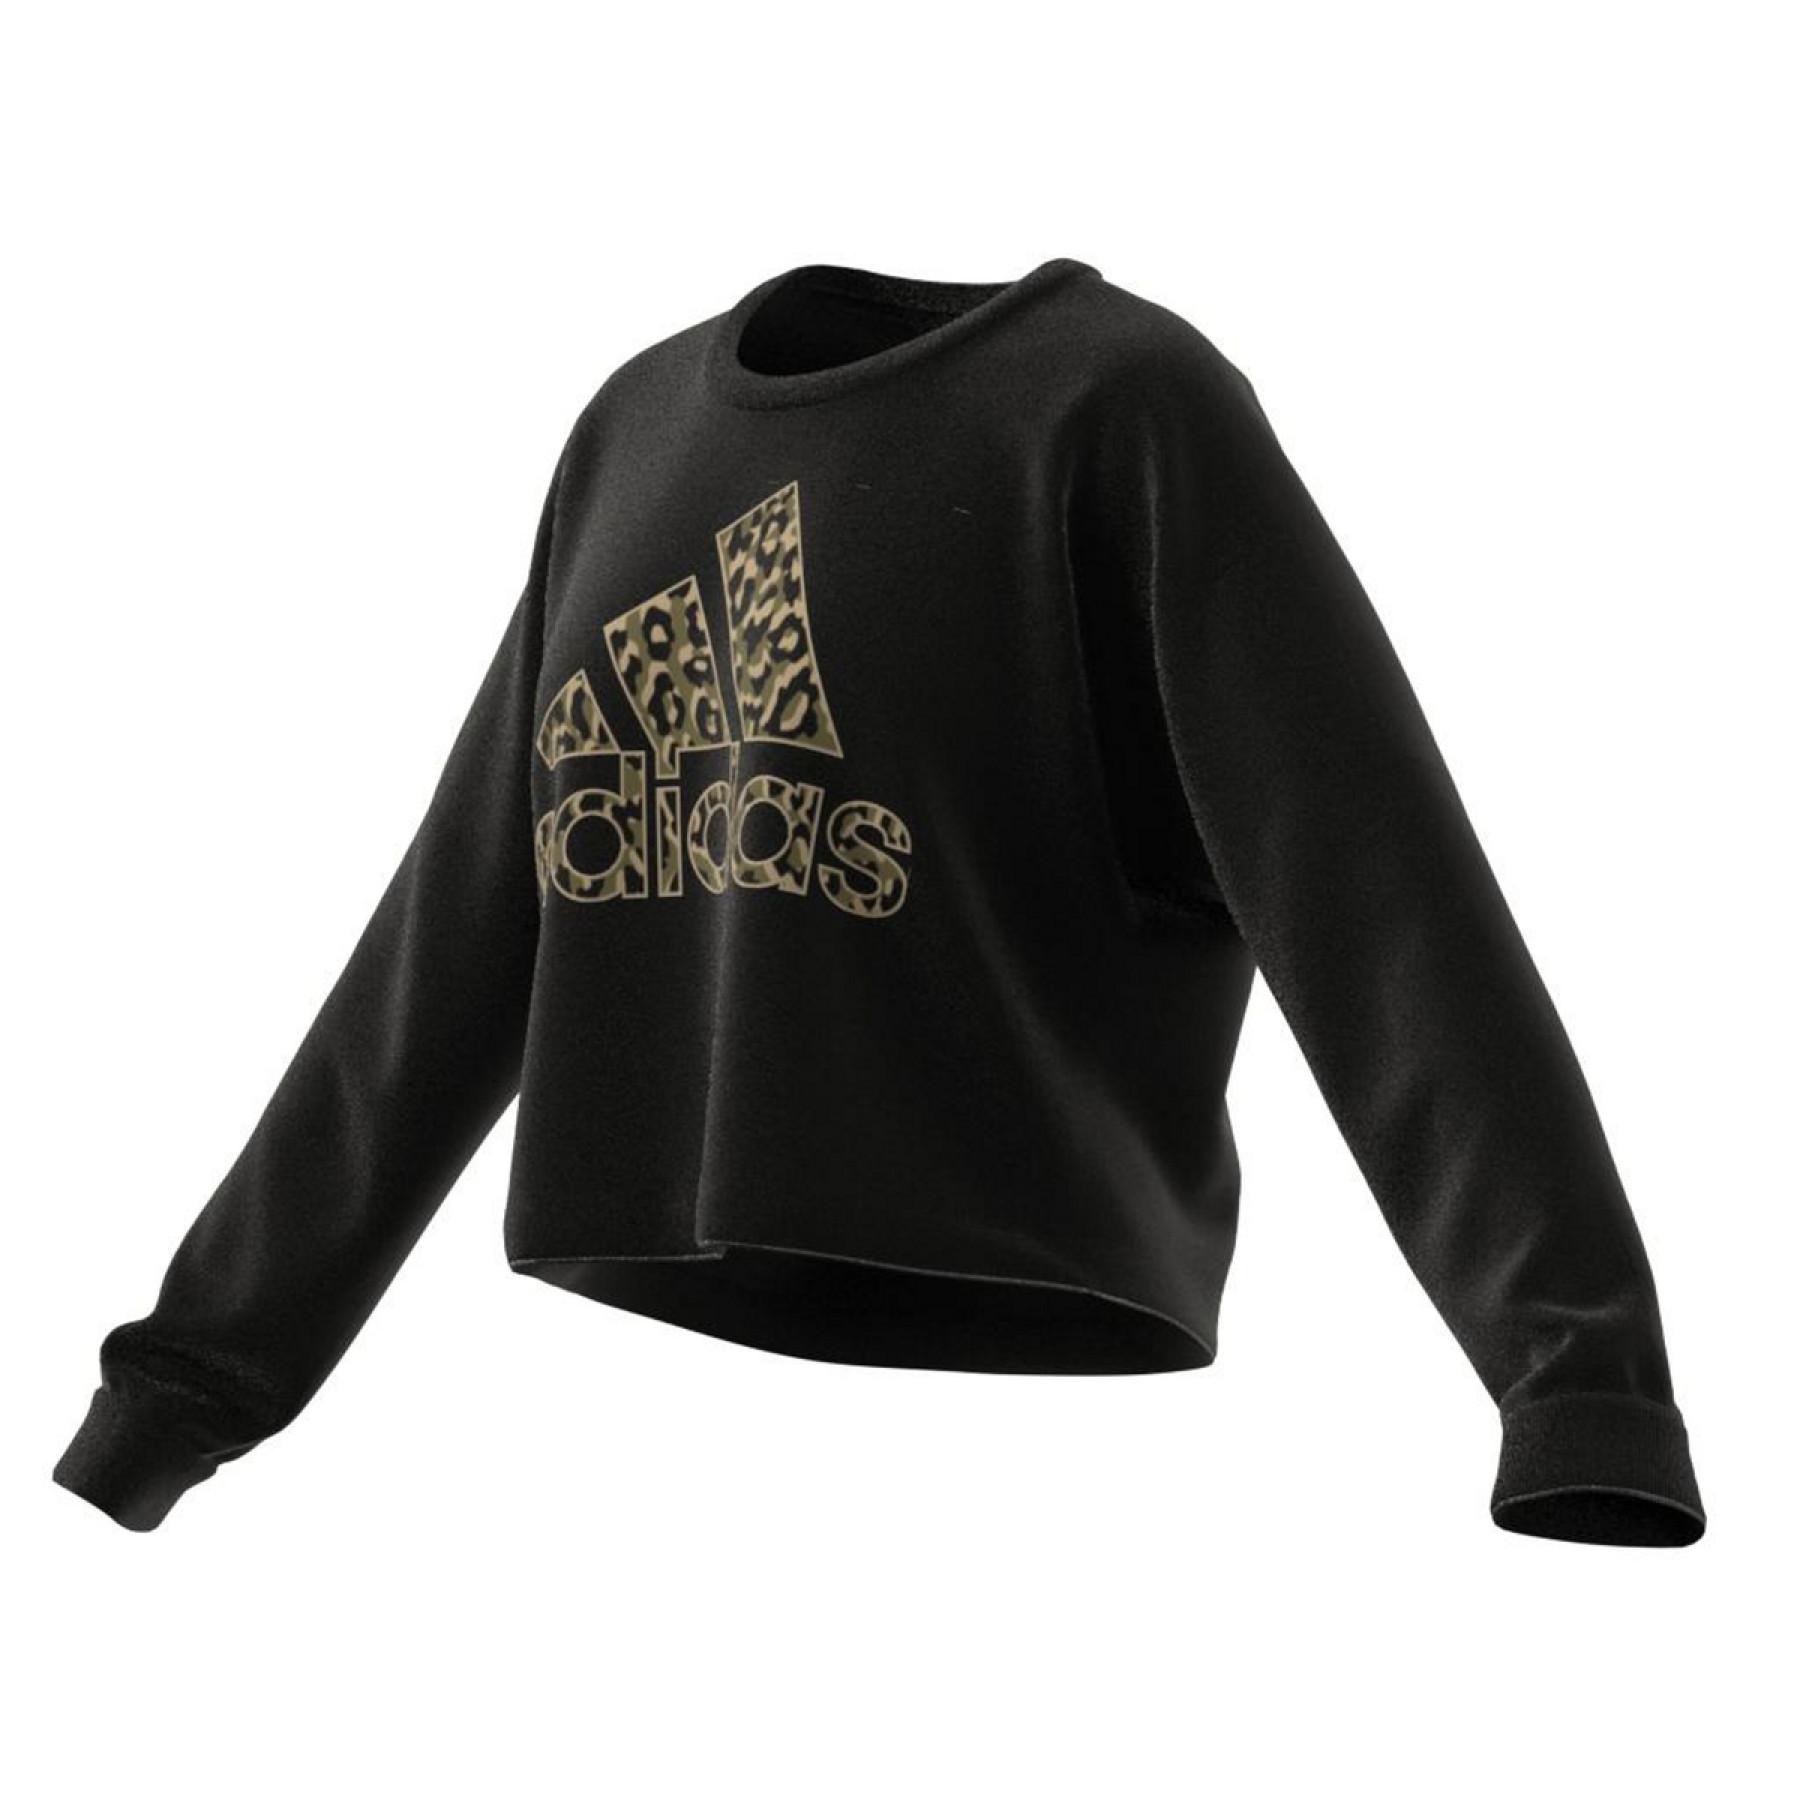 Damen-Sweatshirt adidas Leopard Graphic